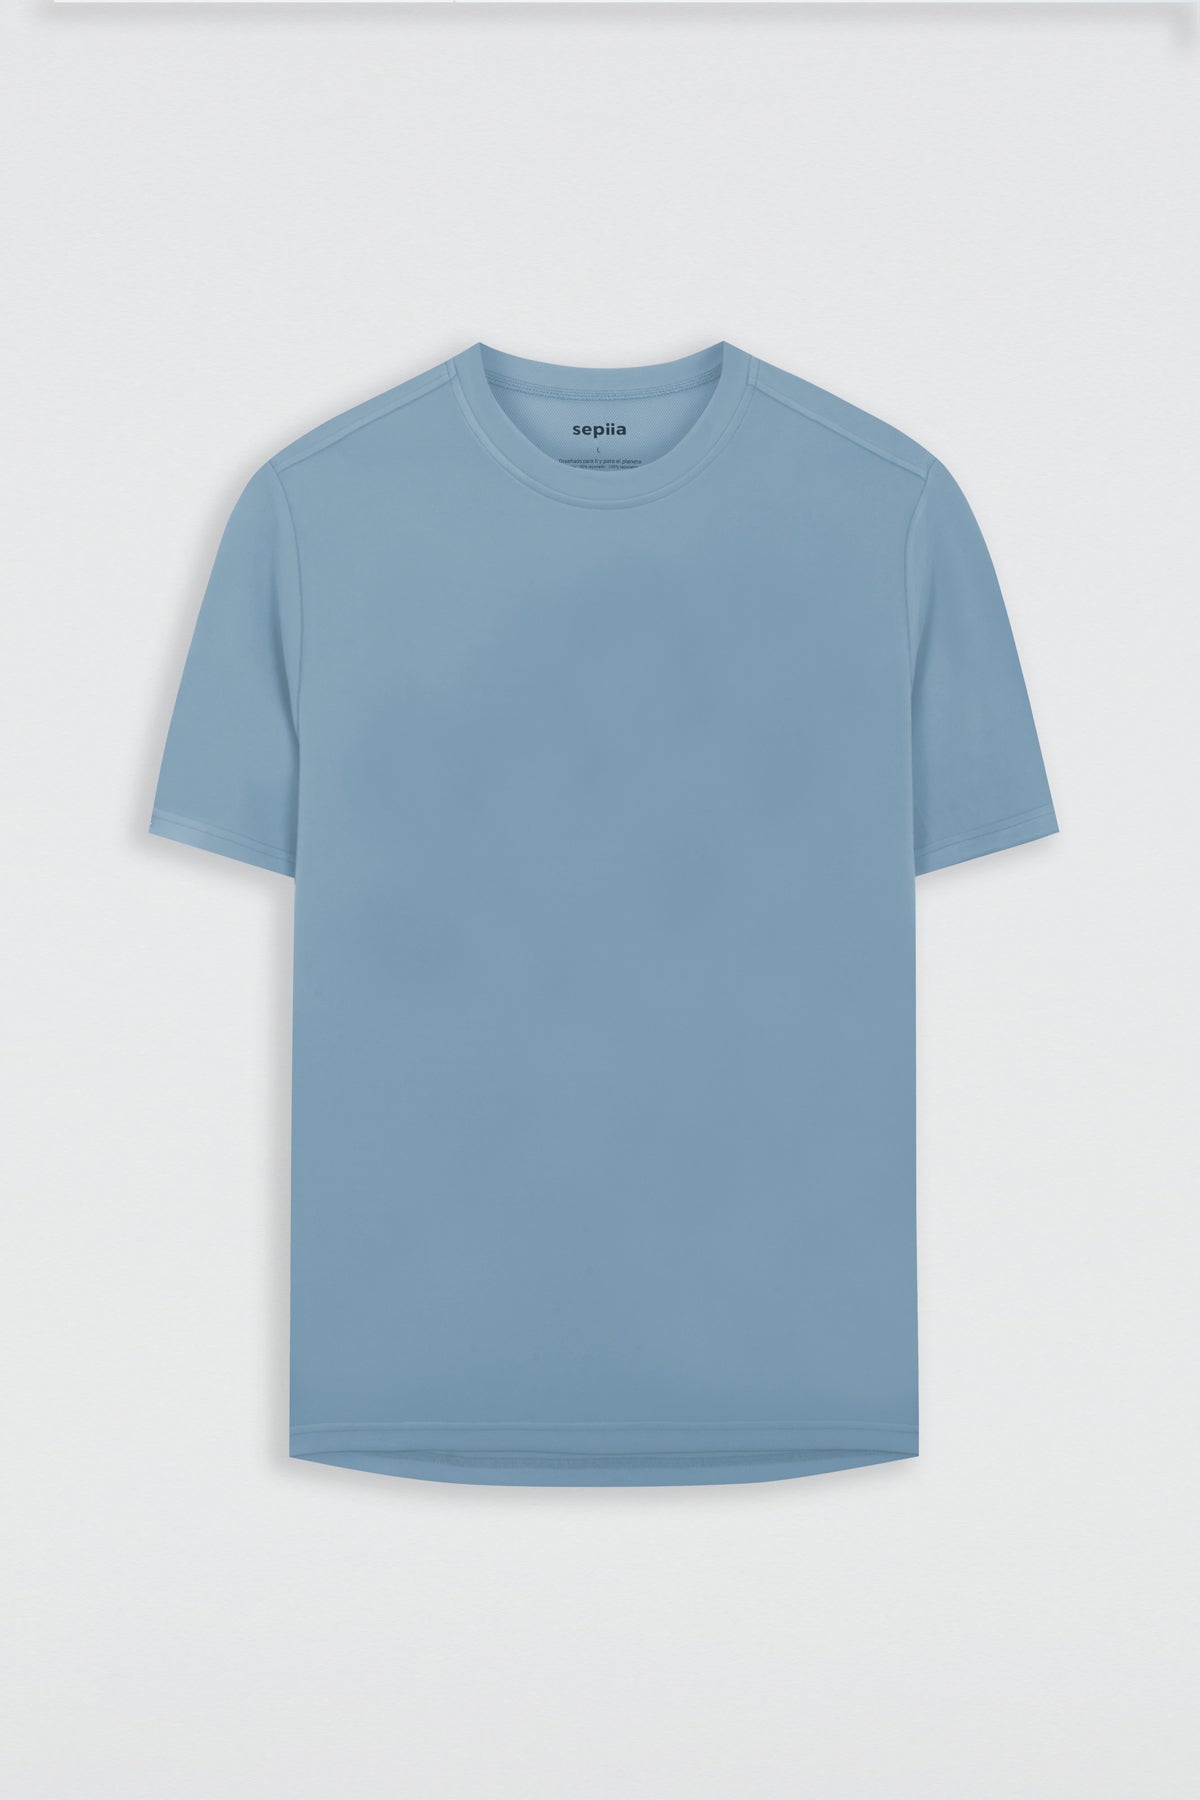 Camiseta básica de hombre azul de manga corta, antiarrugas y antimanchas..Foto prenda en plano